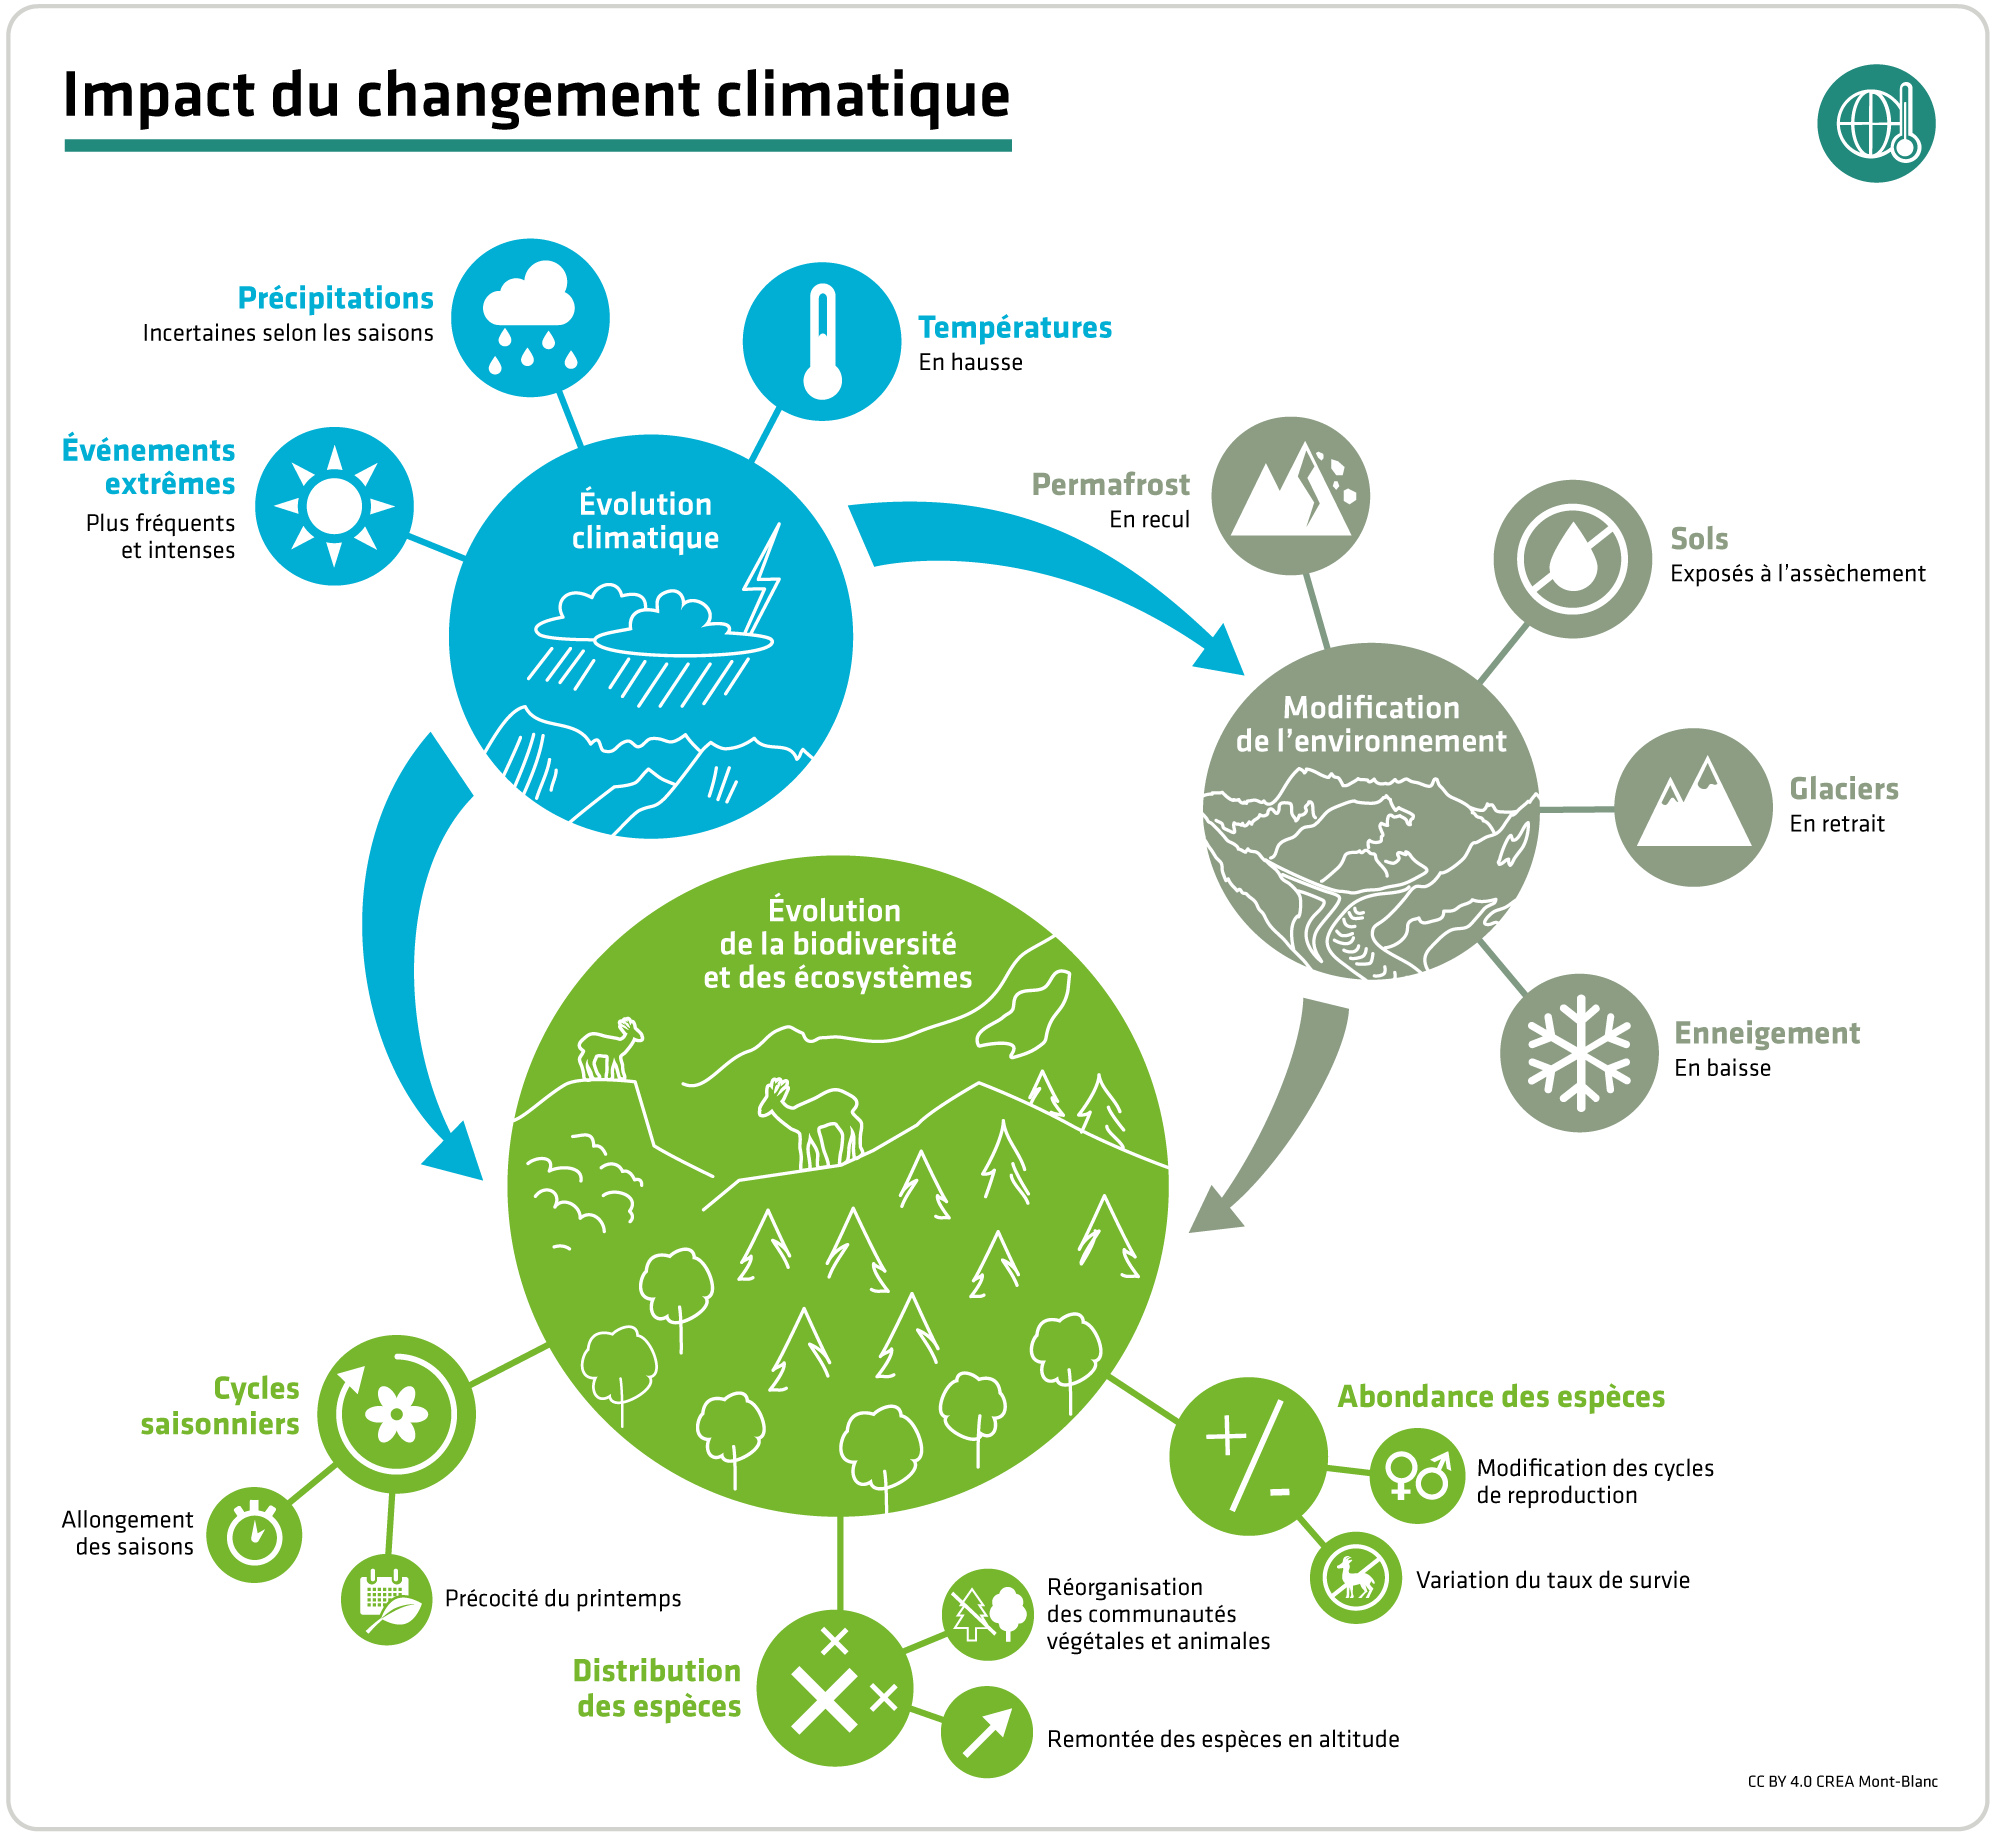 Impact du changement climatique sur l'environnement, la biodiversité et les écosystèmes